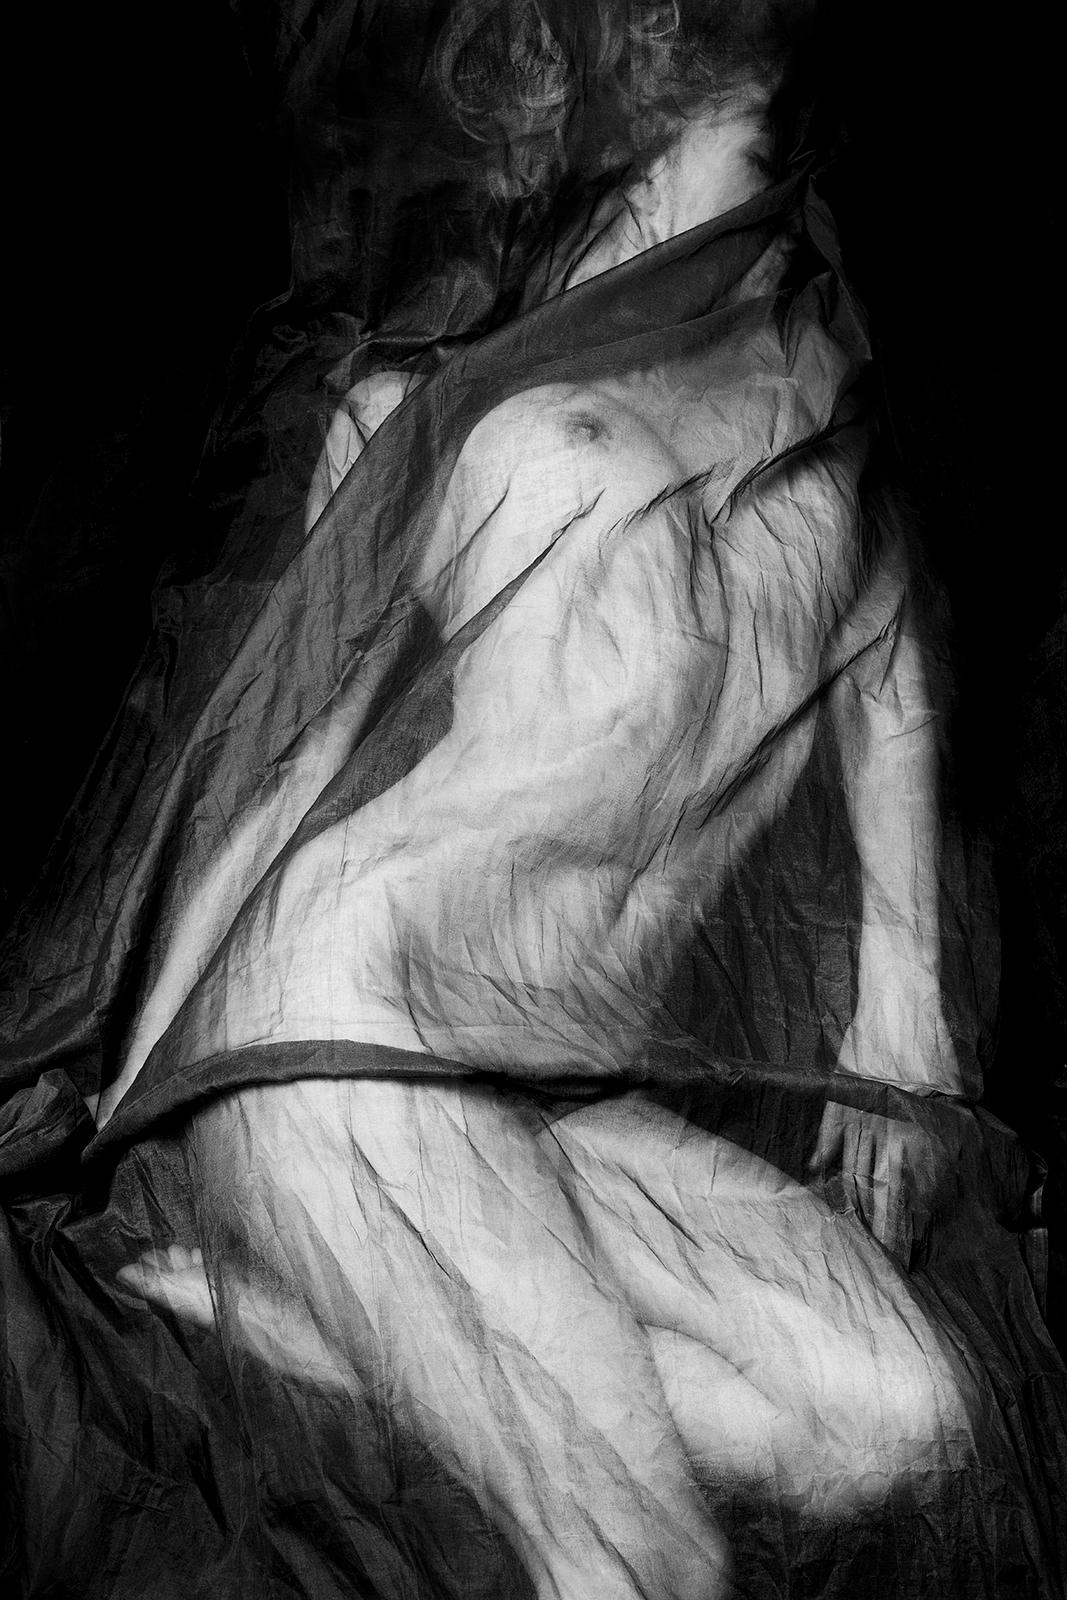 Ian Sanderson Black and White Photograph – Charlotte-Signierter Kunstdruck in limitierter Auflage, Schwarz-Weiß-Foto, Sexy 